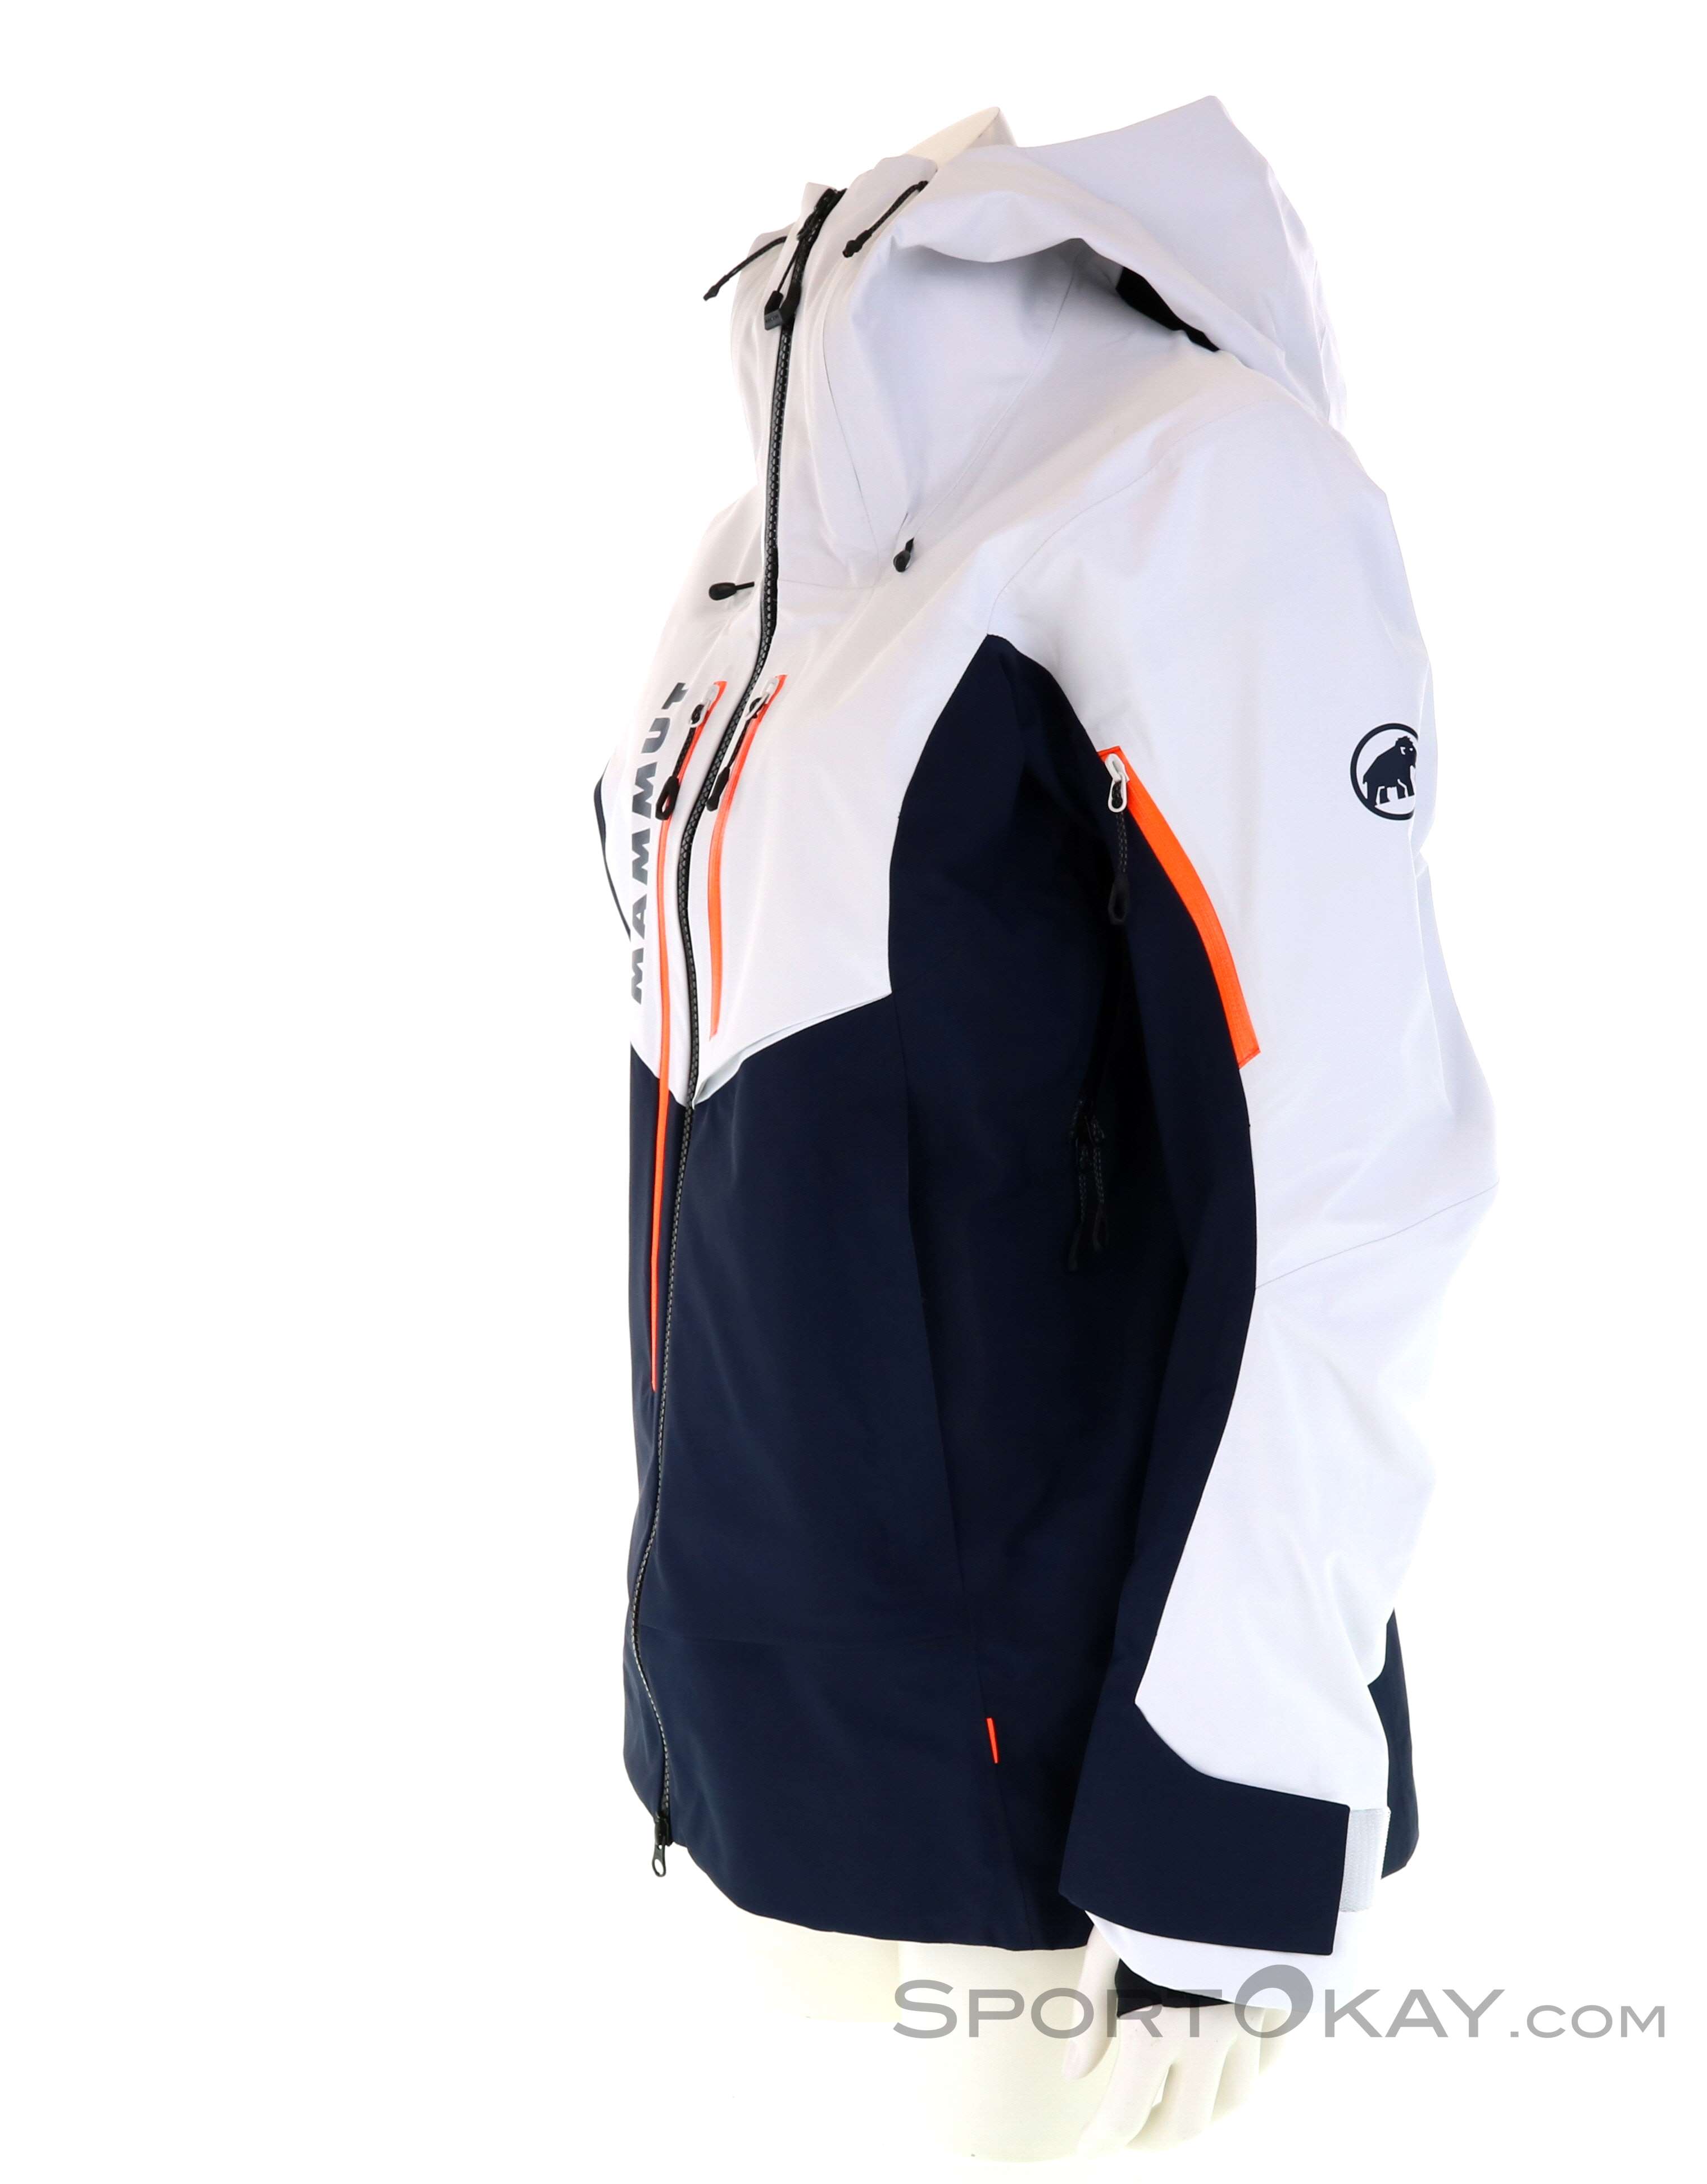 Mammut La Liste Pro Hardshell Hooded Jacket - Skijacke Damen online kaufen